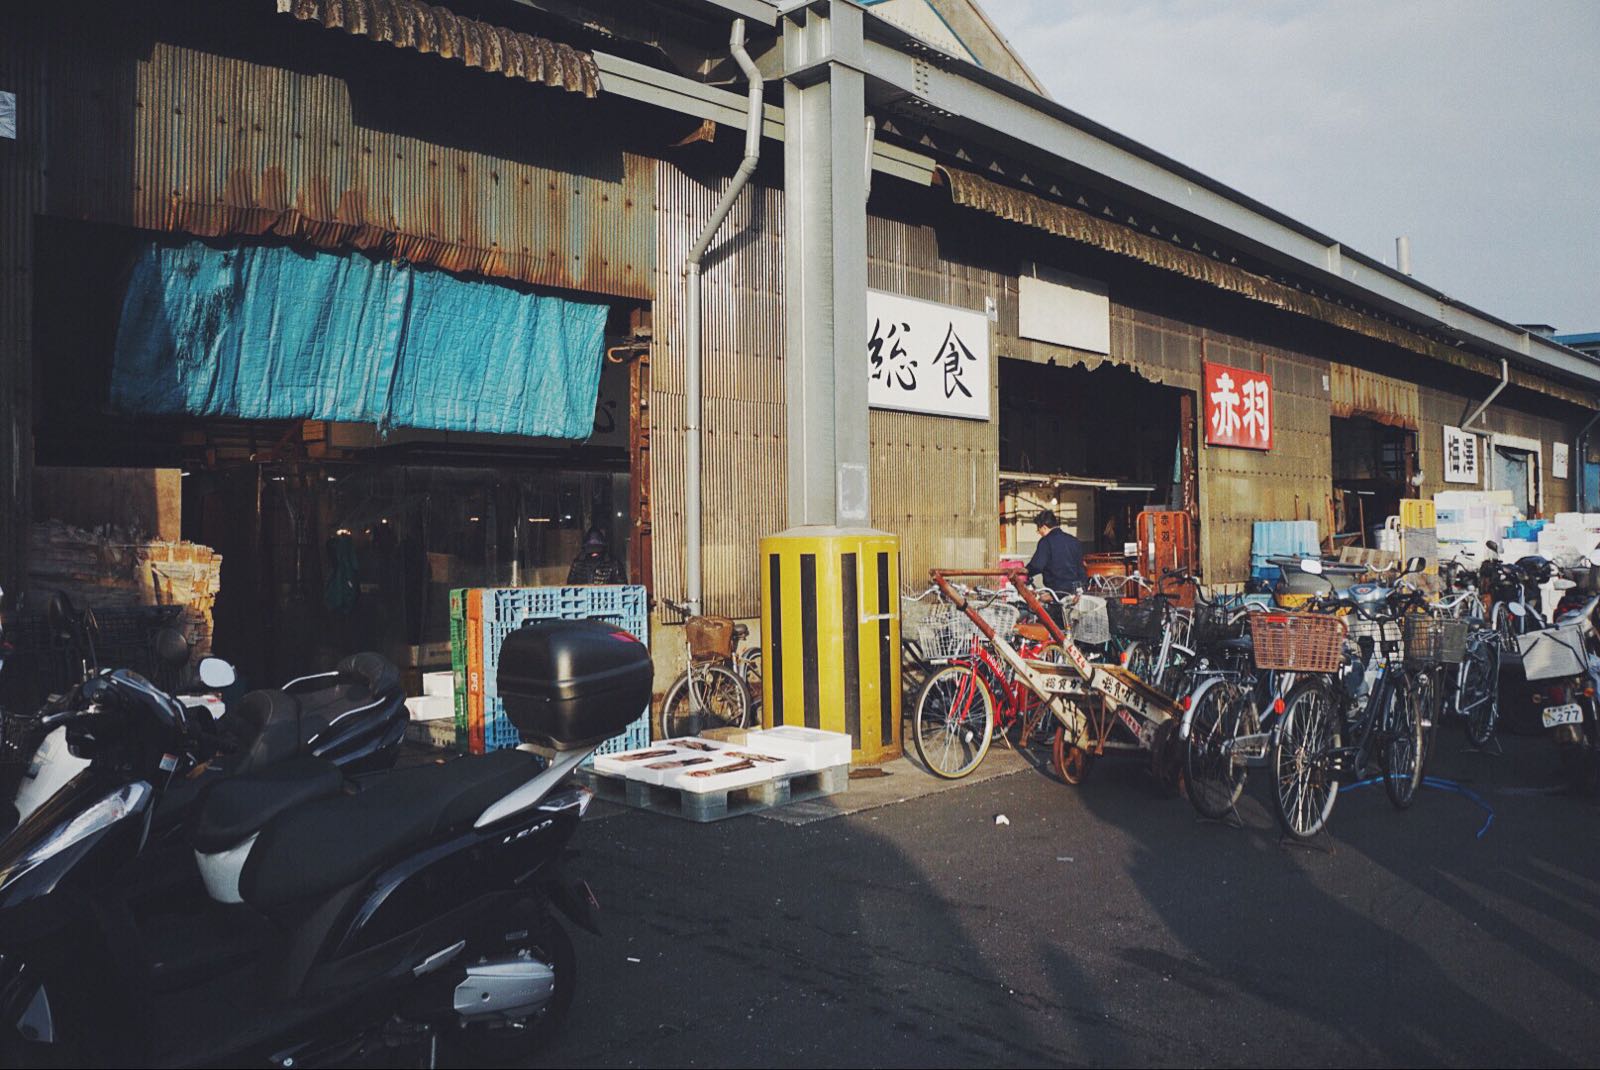 筑地市场是东京鱼类批发市场，筑地市场站A1A2出口向着右手边走，走到路